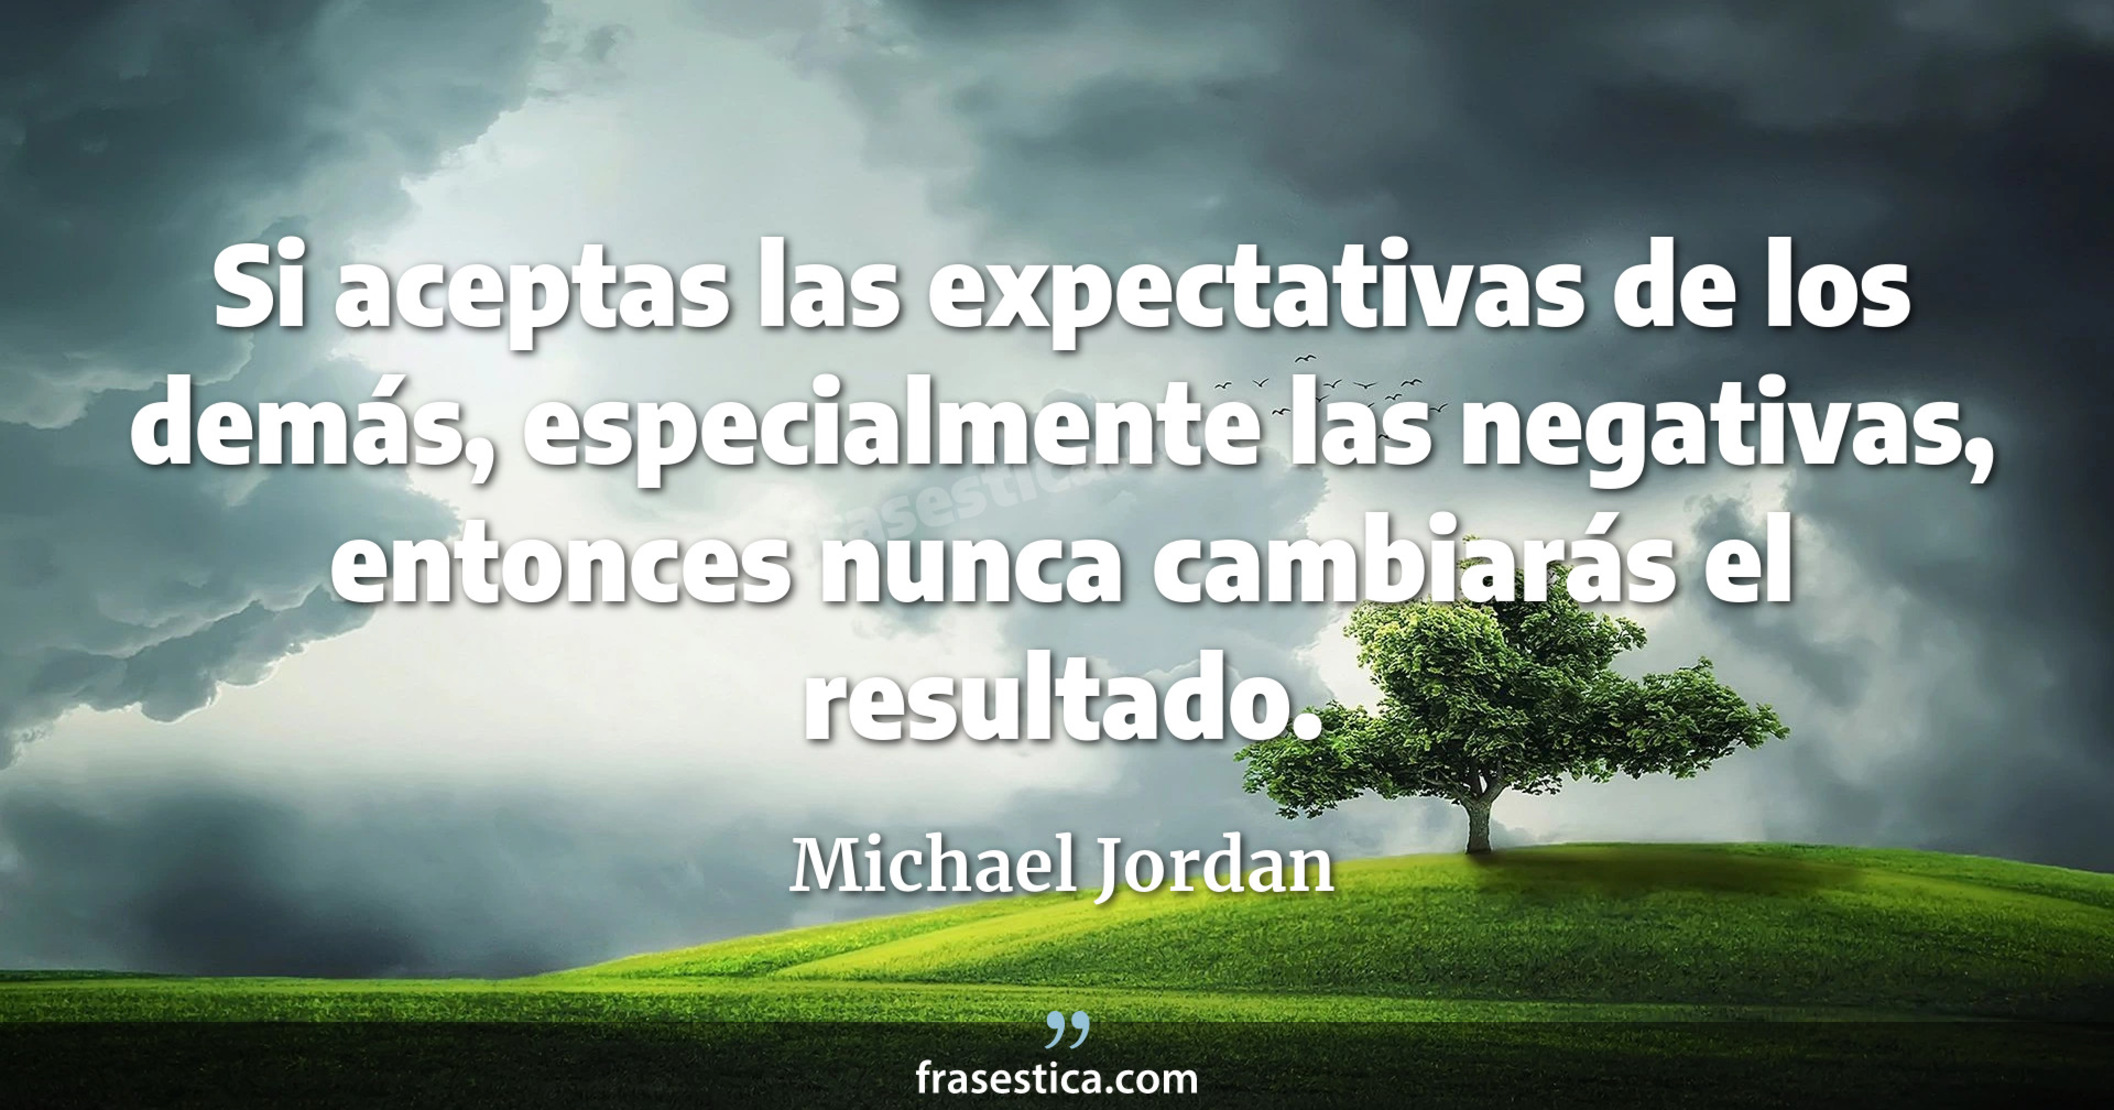 Si aceptas las expectativas de los demás, especialmente las negativas, entonces nunca cambiarás el resultado. - Michael Jordan